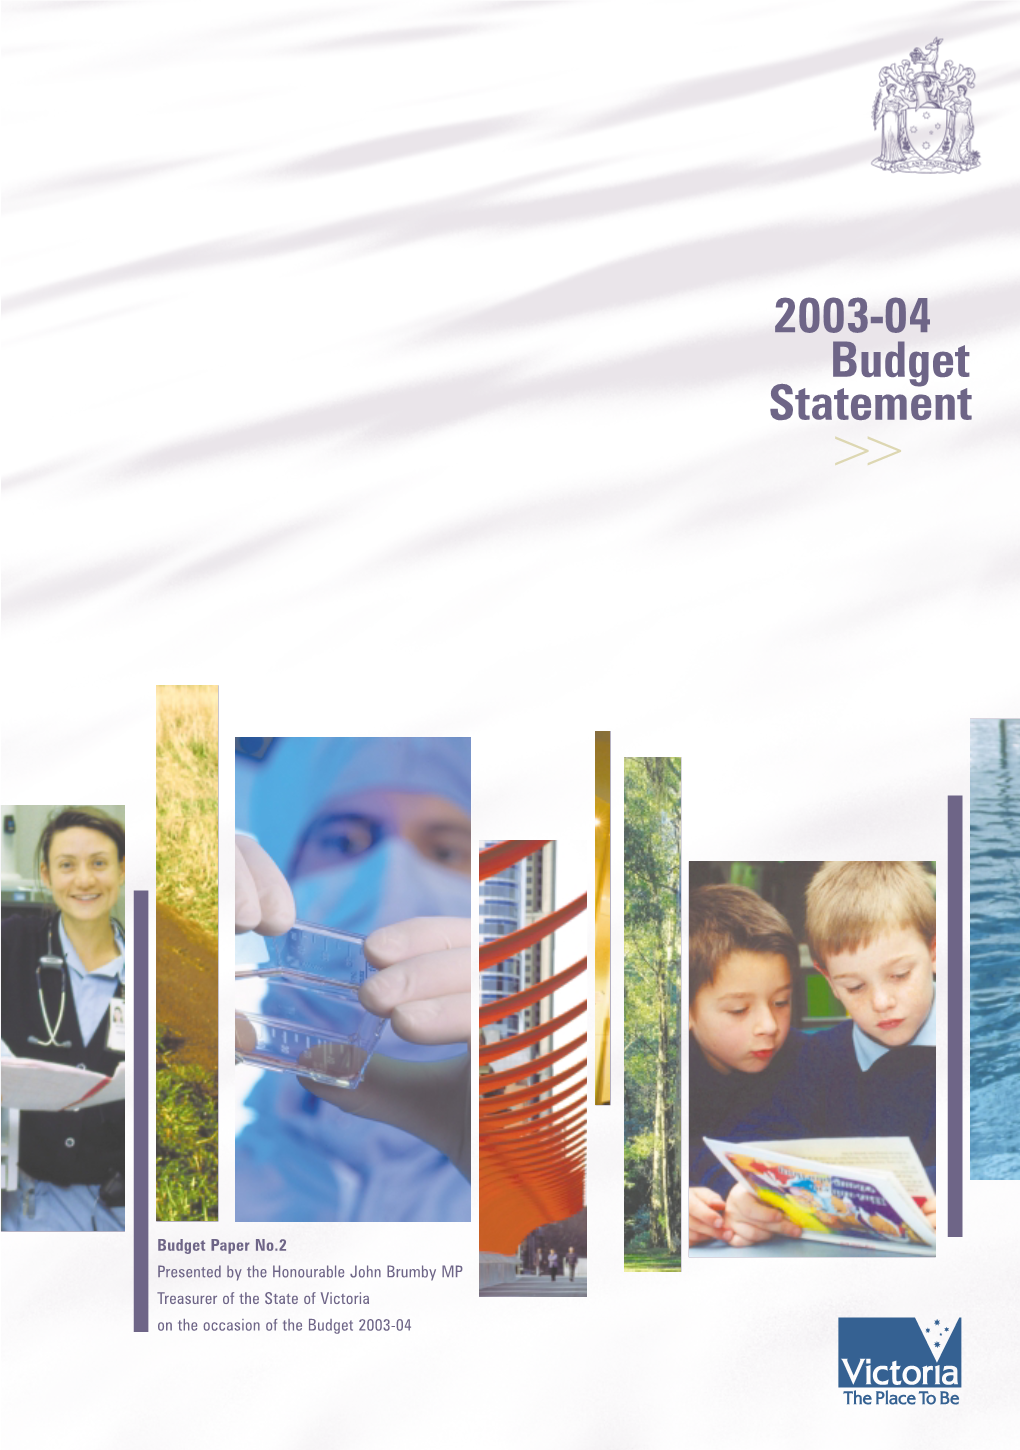 Budget Statement 2003-04